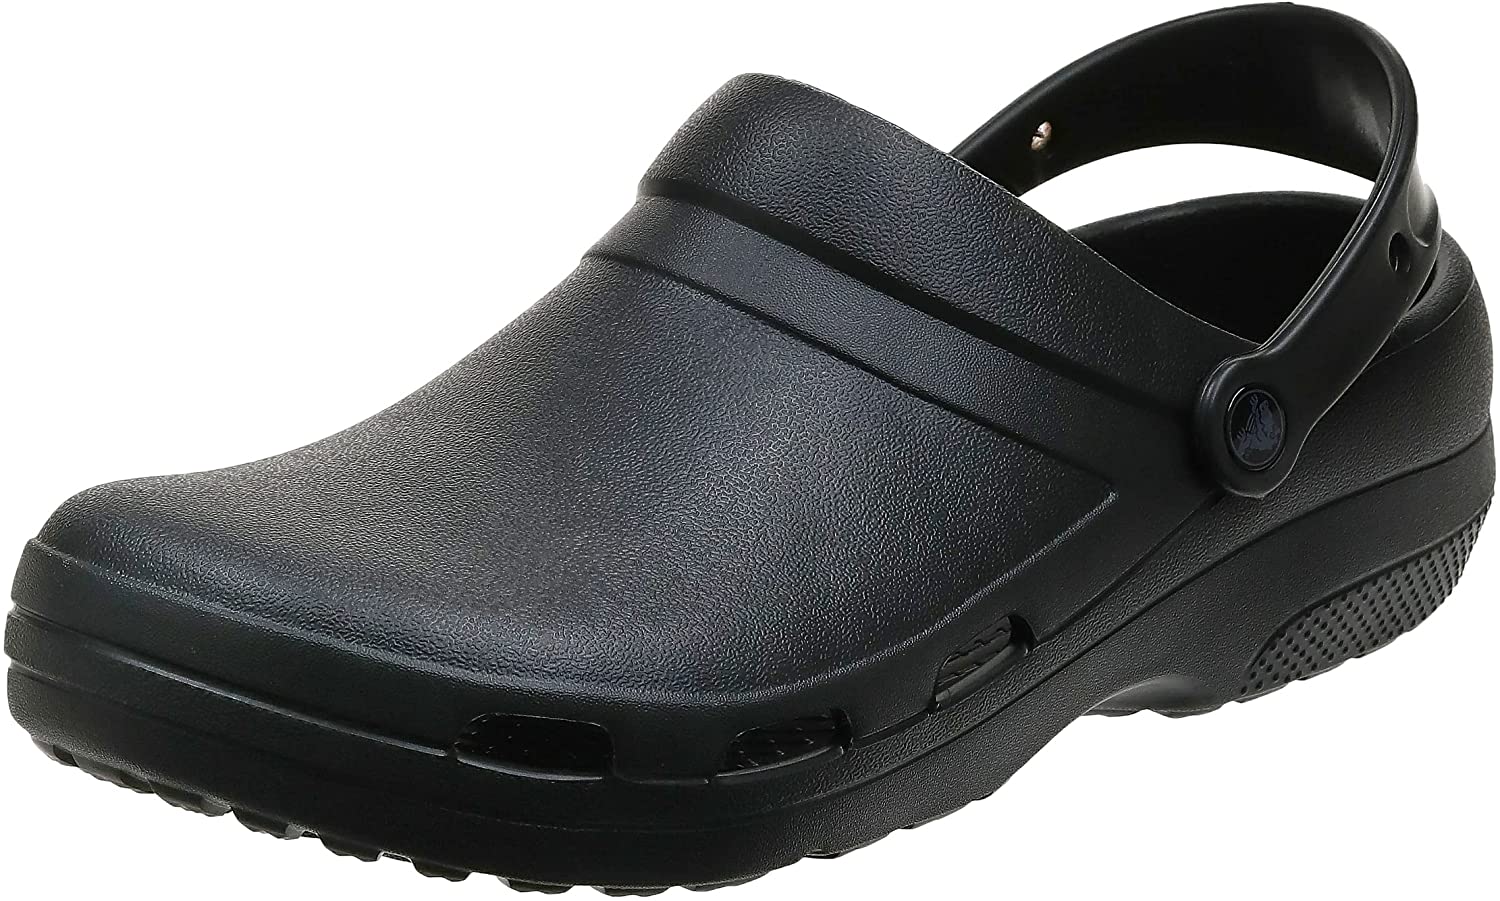 Crocs Men’s or Women’s Specialist II Vent Clog | Work Shoes - $20.95 ...